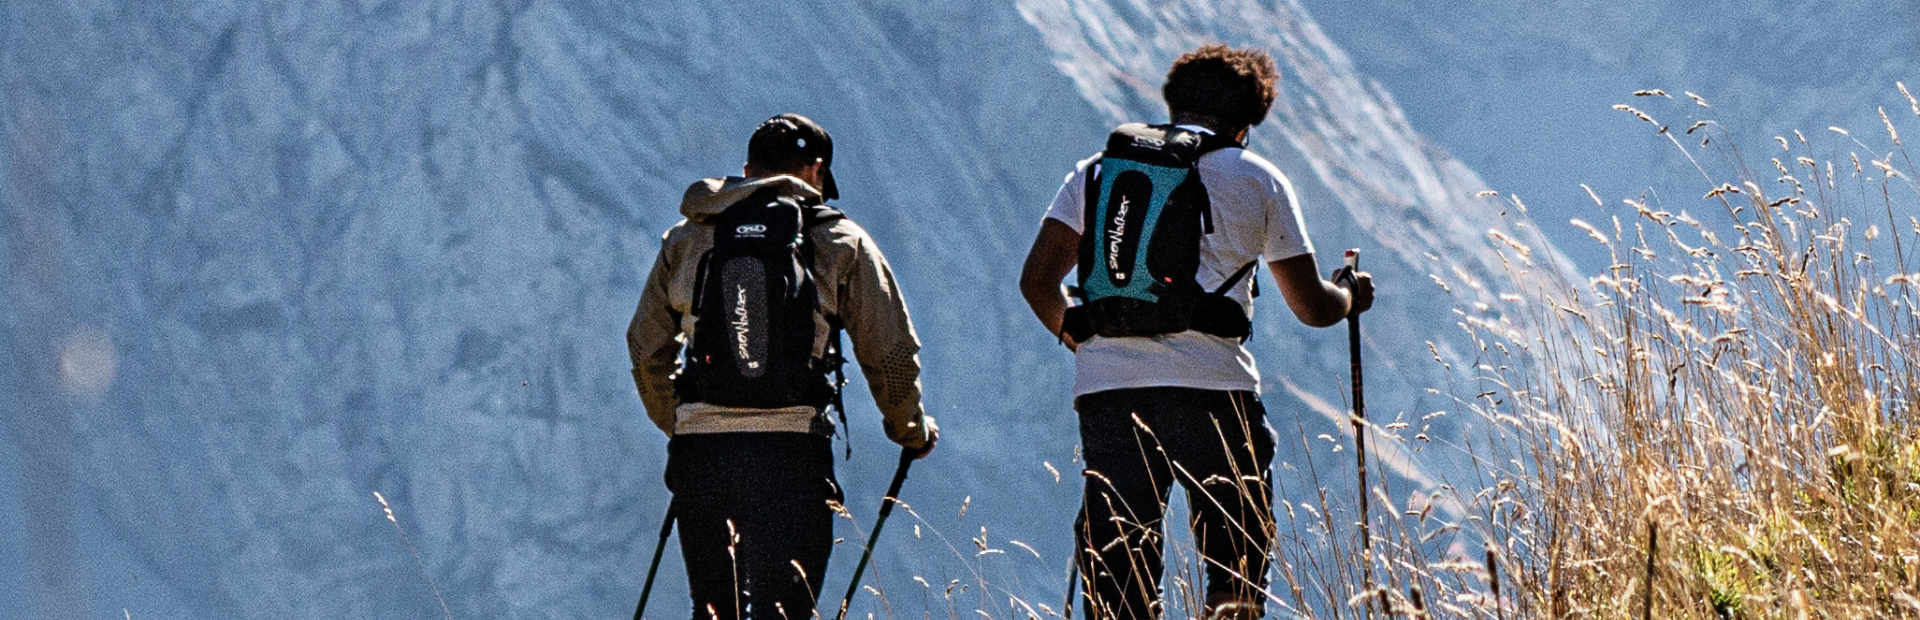 Men's Technical Trekking & Hiking Gear